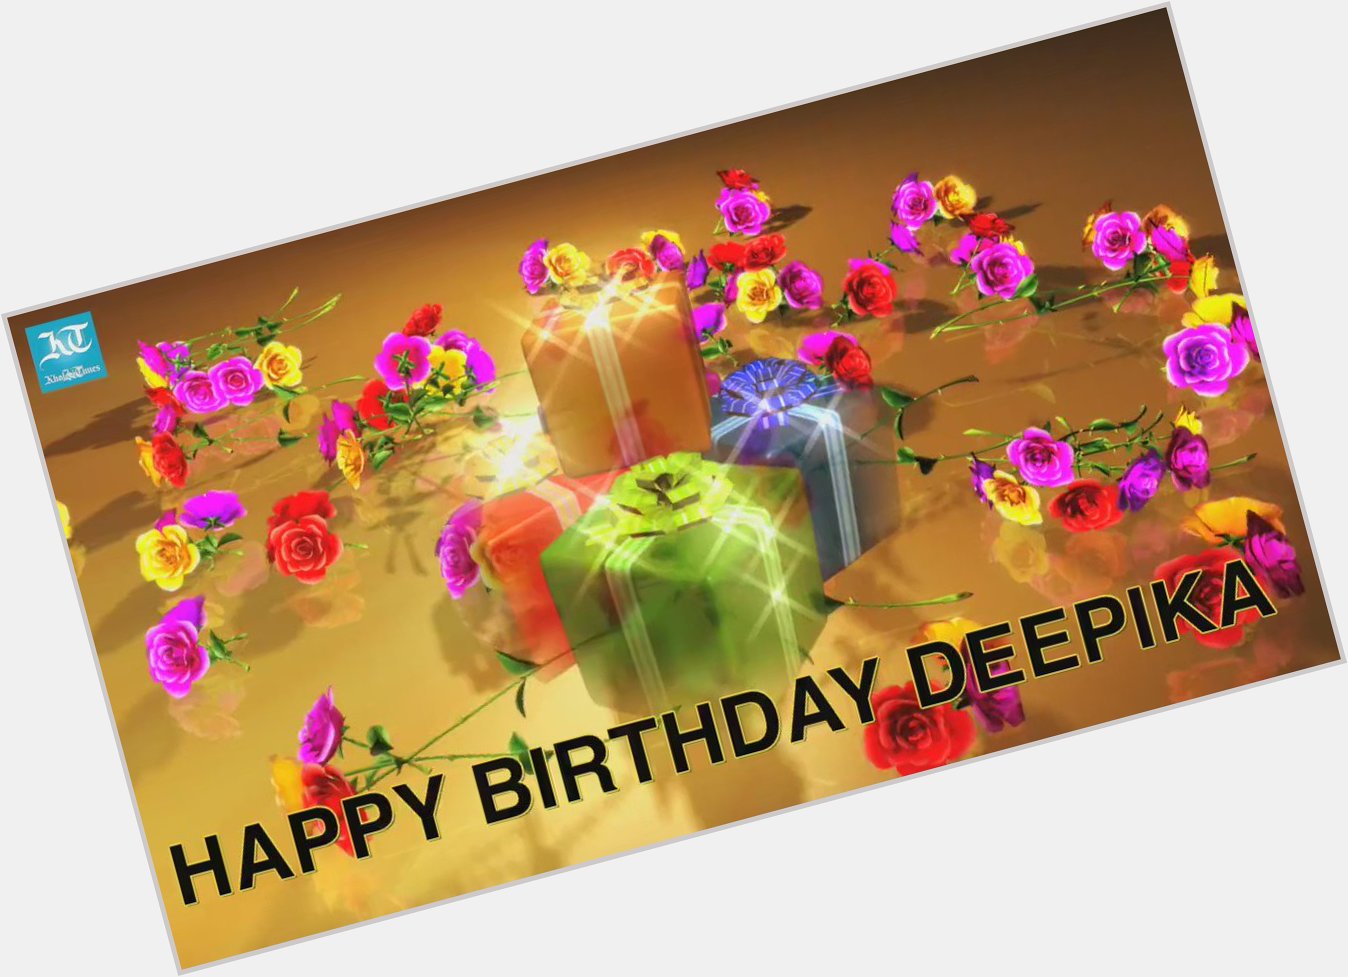 Watch: Happy Birthday Deepika Padukone
Video Courtesy: Khaleej Times 